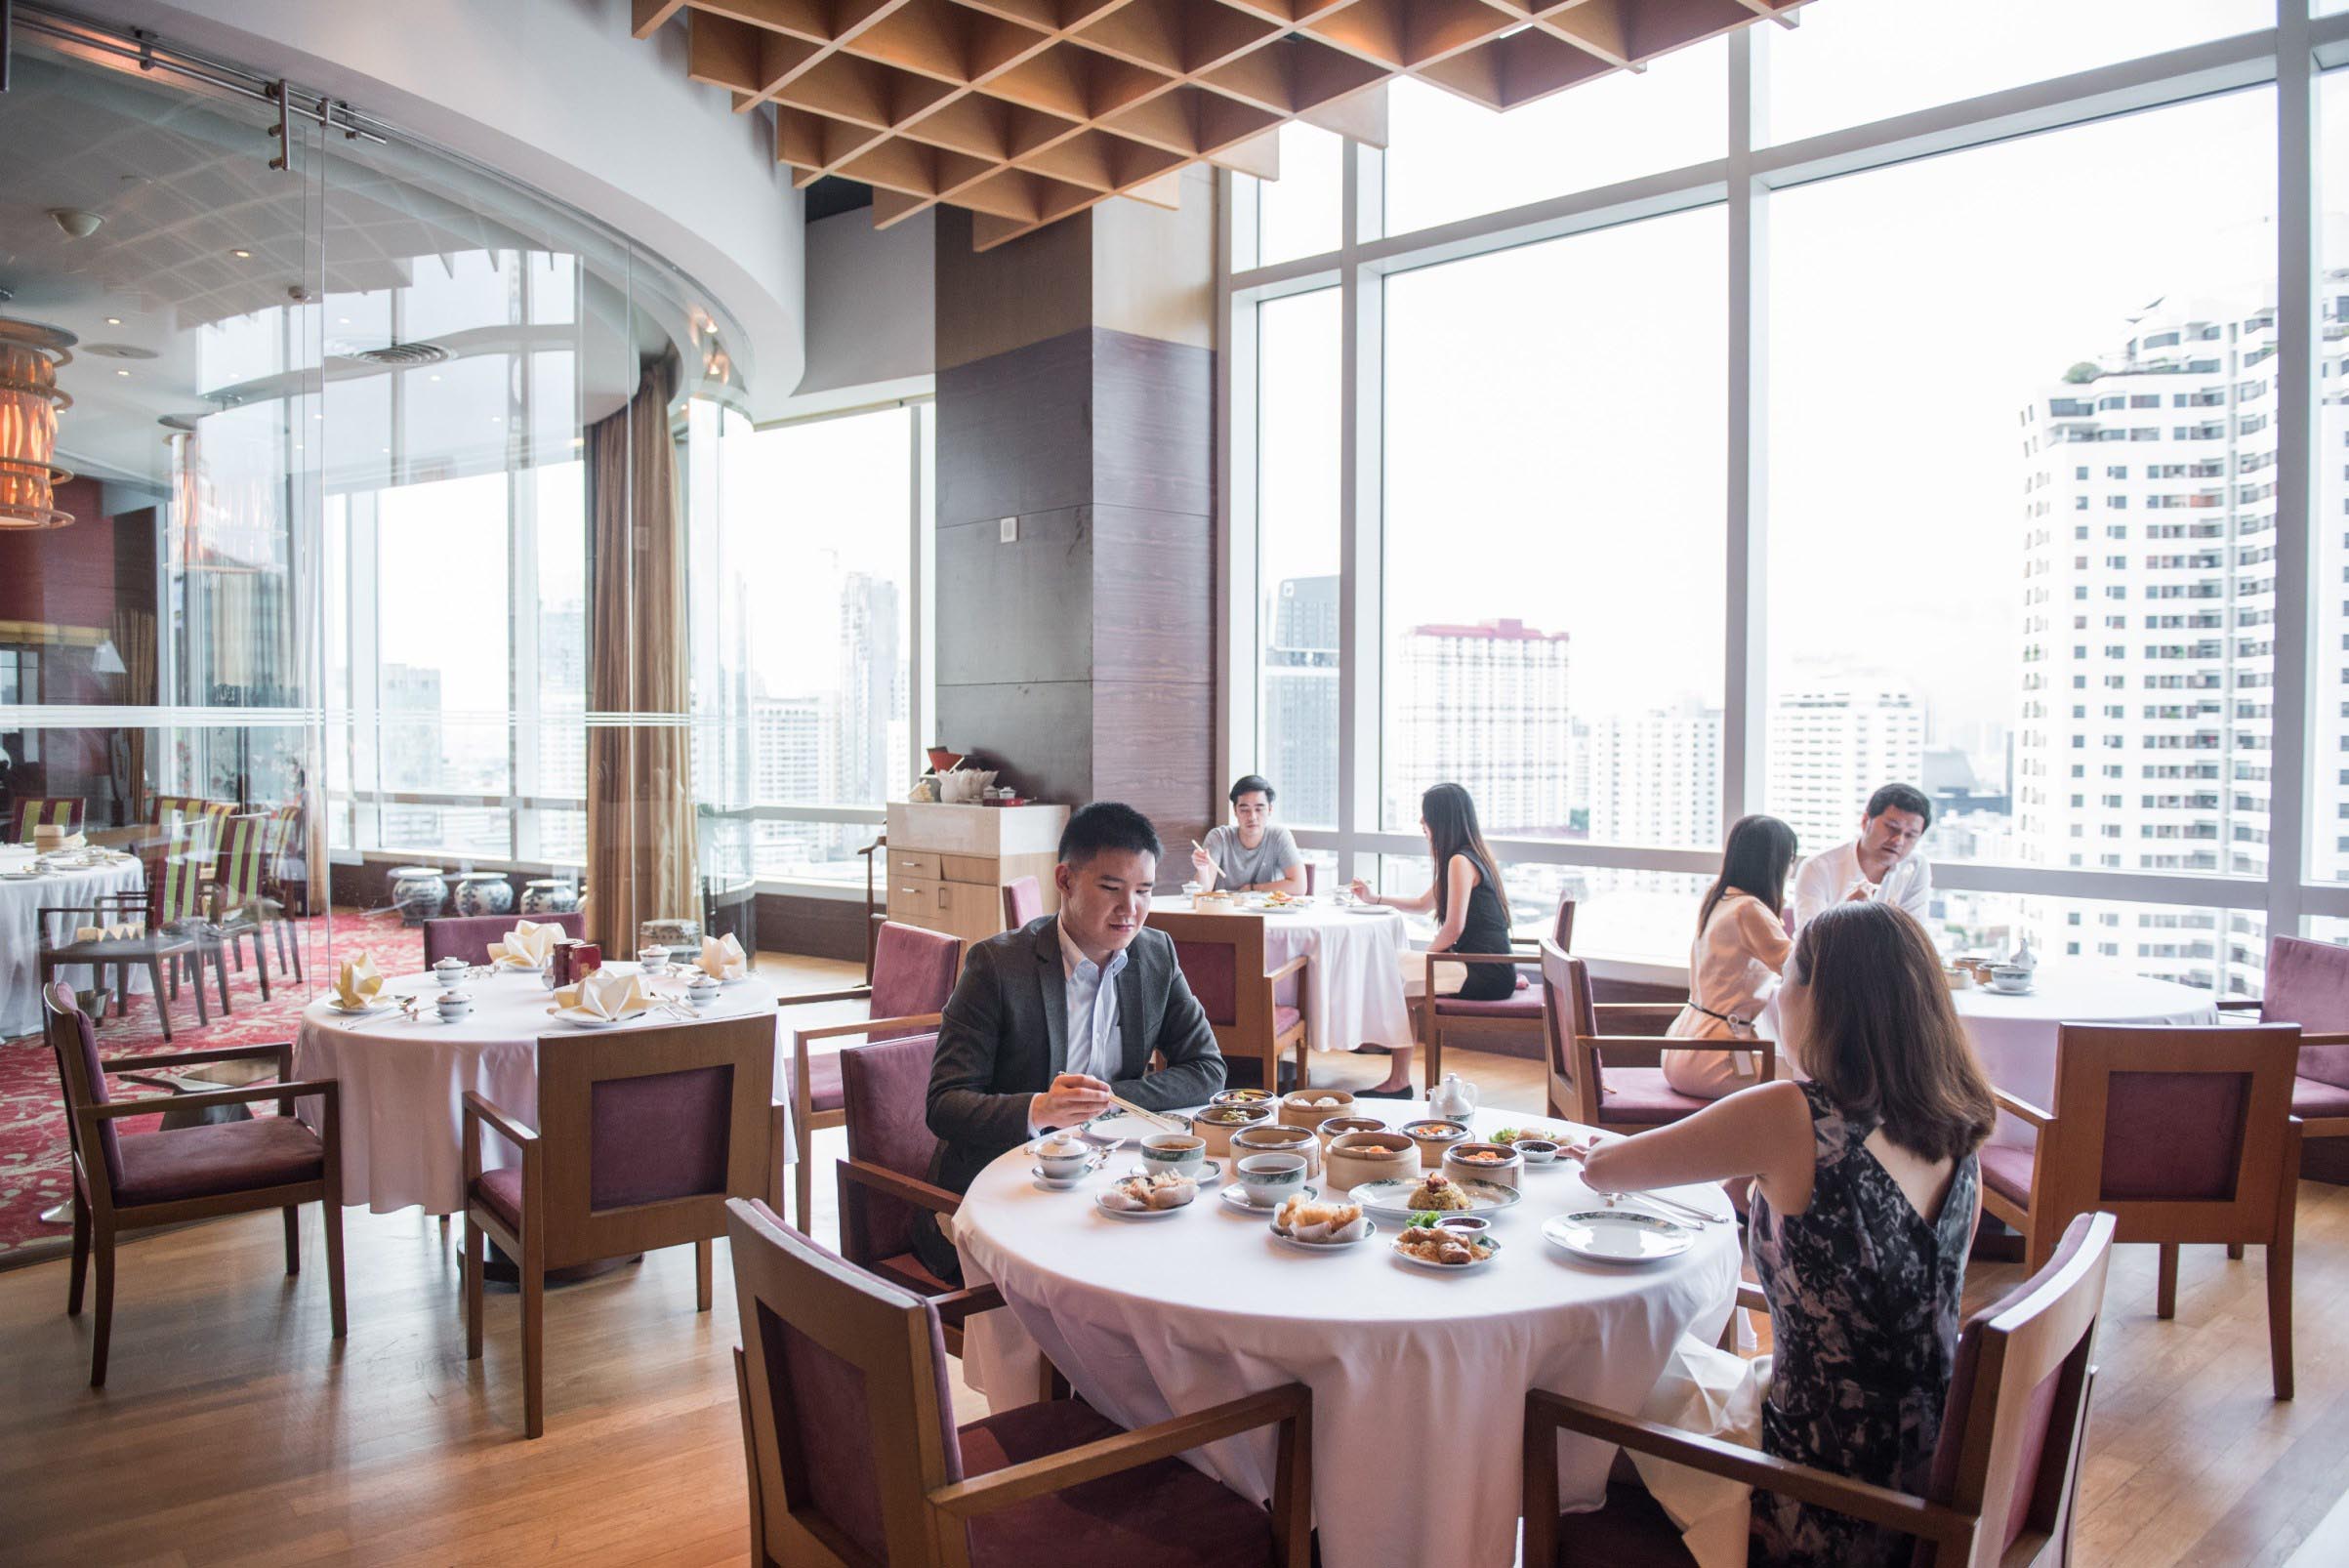 อาหารจีนชั้นเลิศ เมนูหอยเป่าฮื้อระดับจักรพรรดิ ณ ห้องอาหารจีนไดนาสตี้, โรงแรมเซ็นทาราแกรนด์ฯ เซ็นทรัลเวิลด์